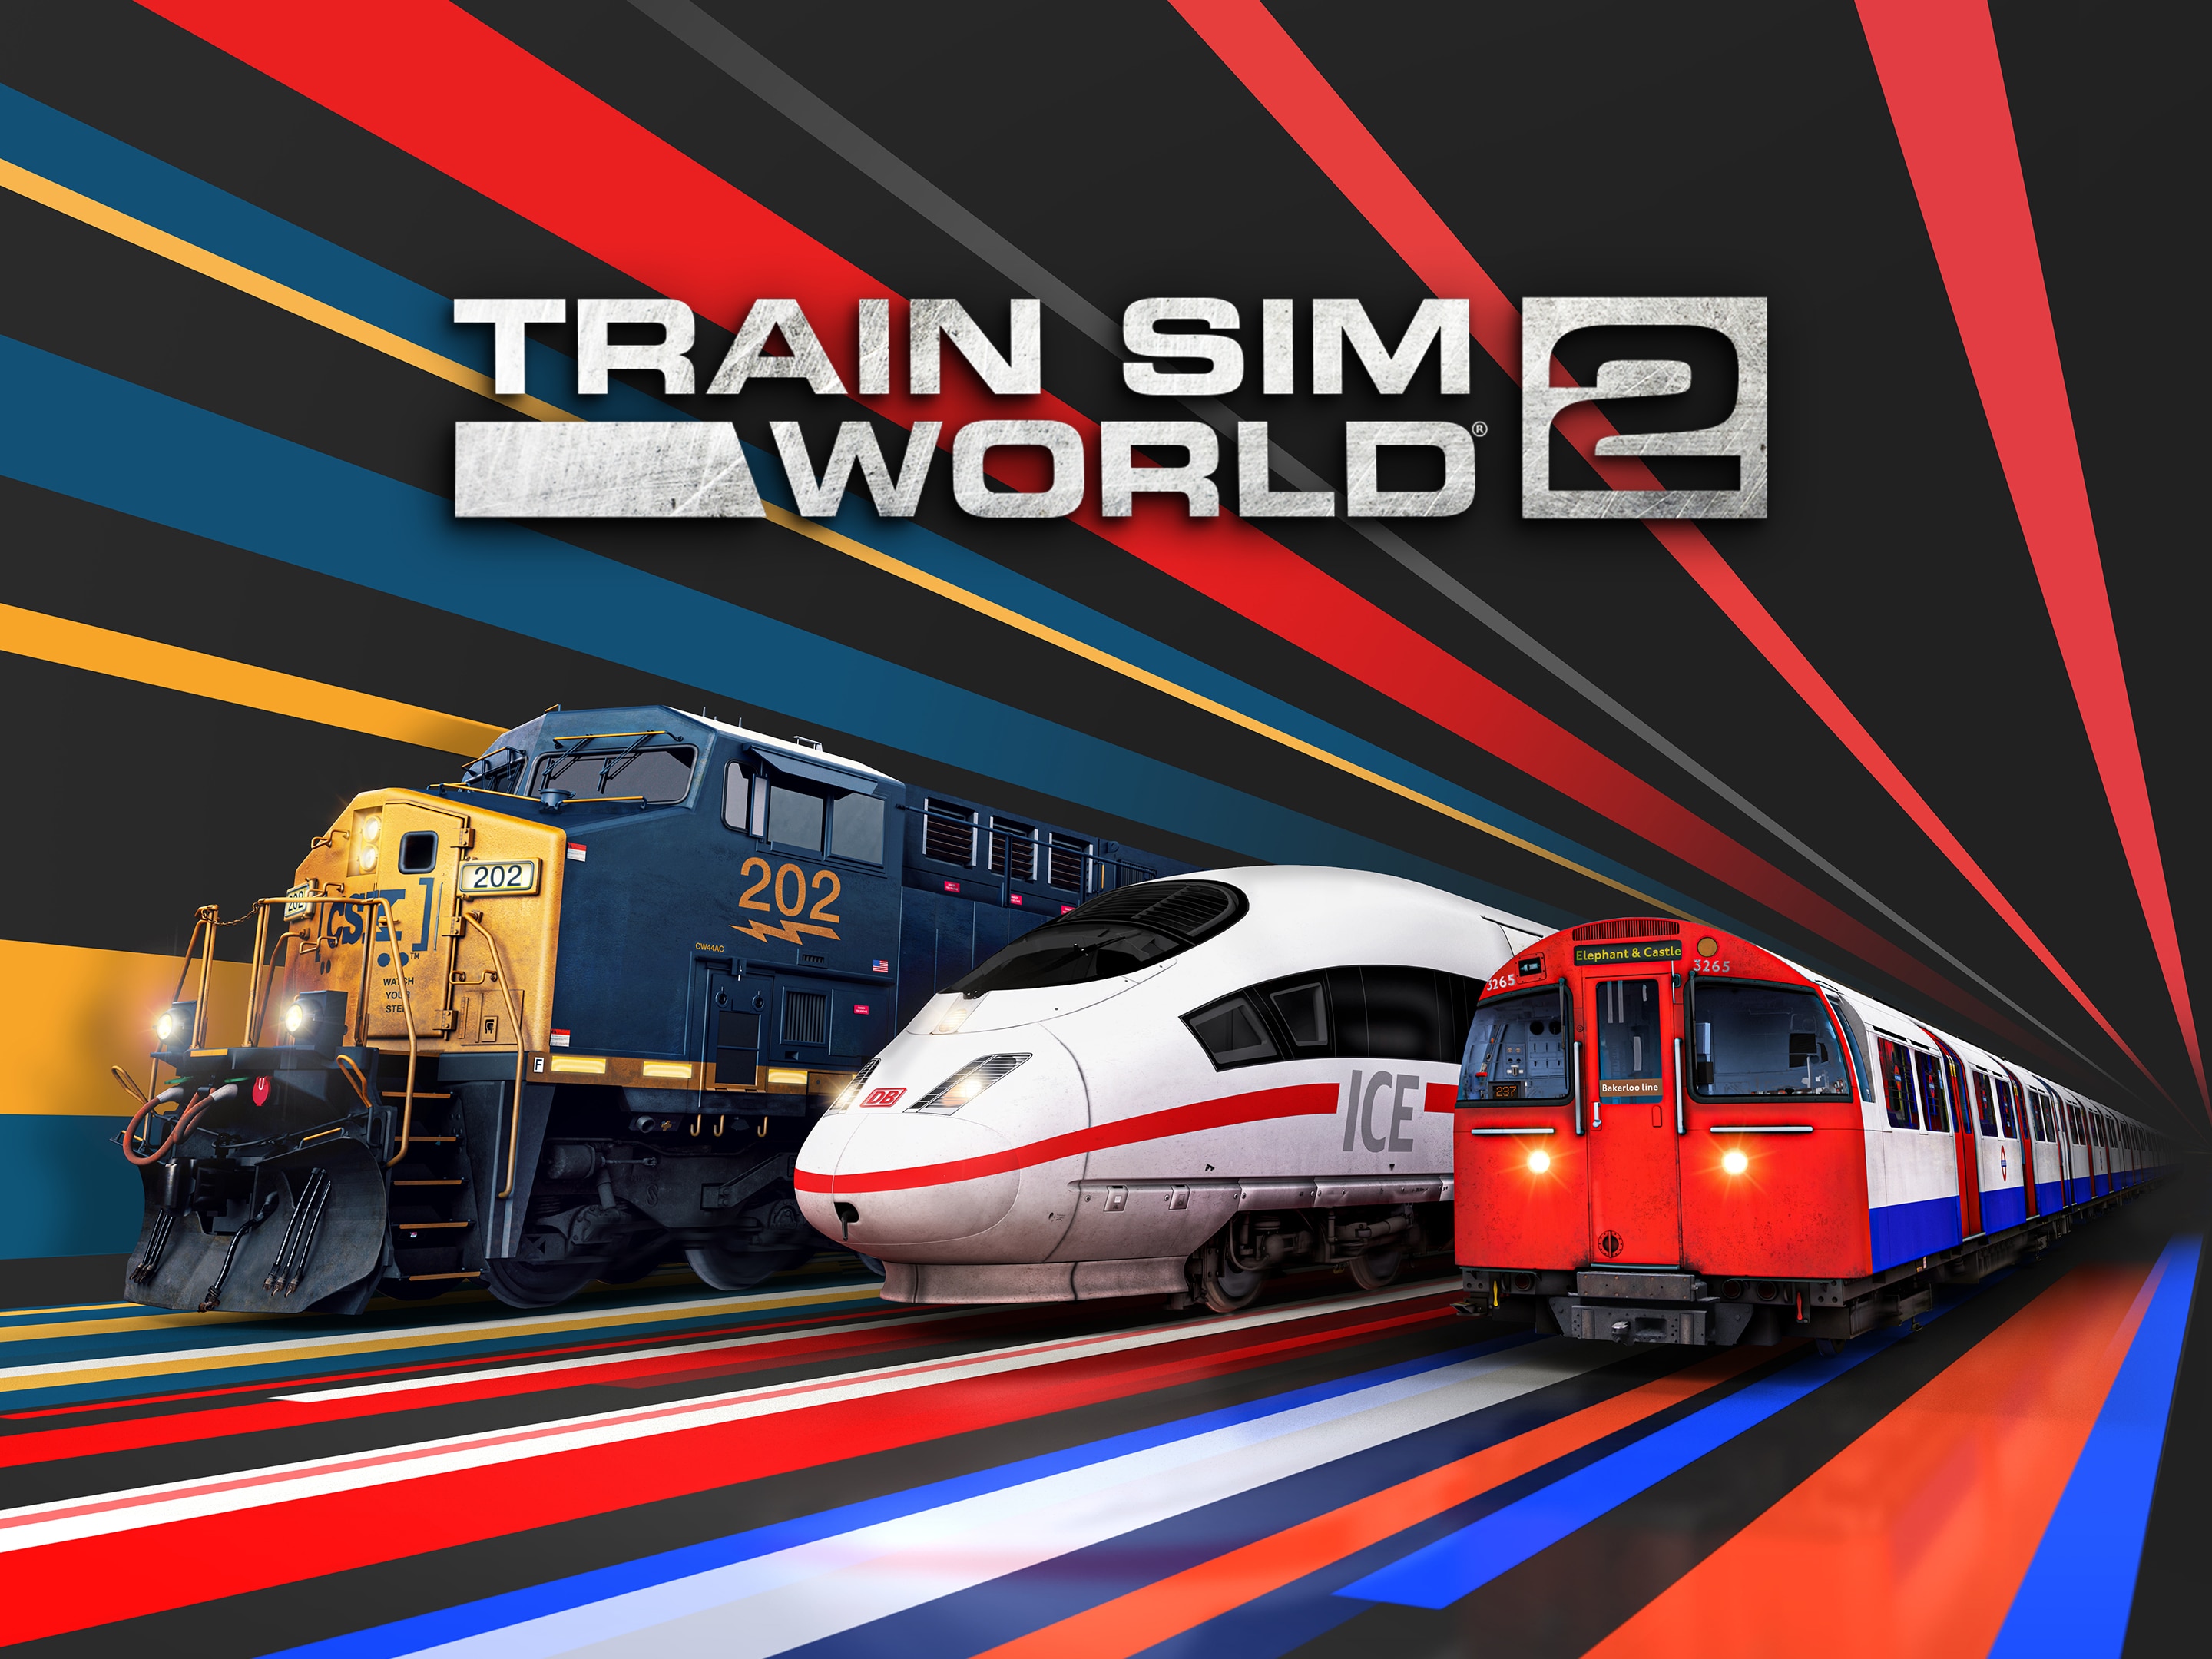 Скачать обои Поезд Sim World 2 на телефон бесплатно